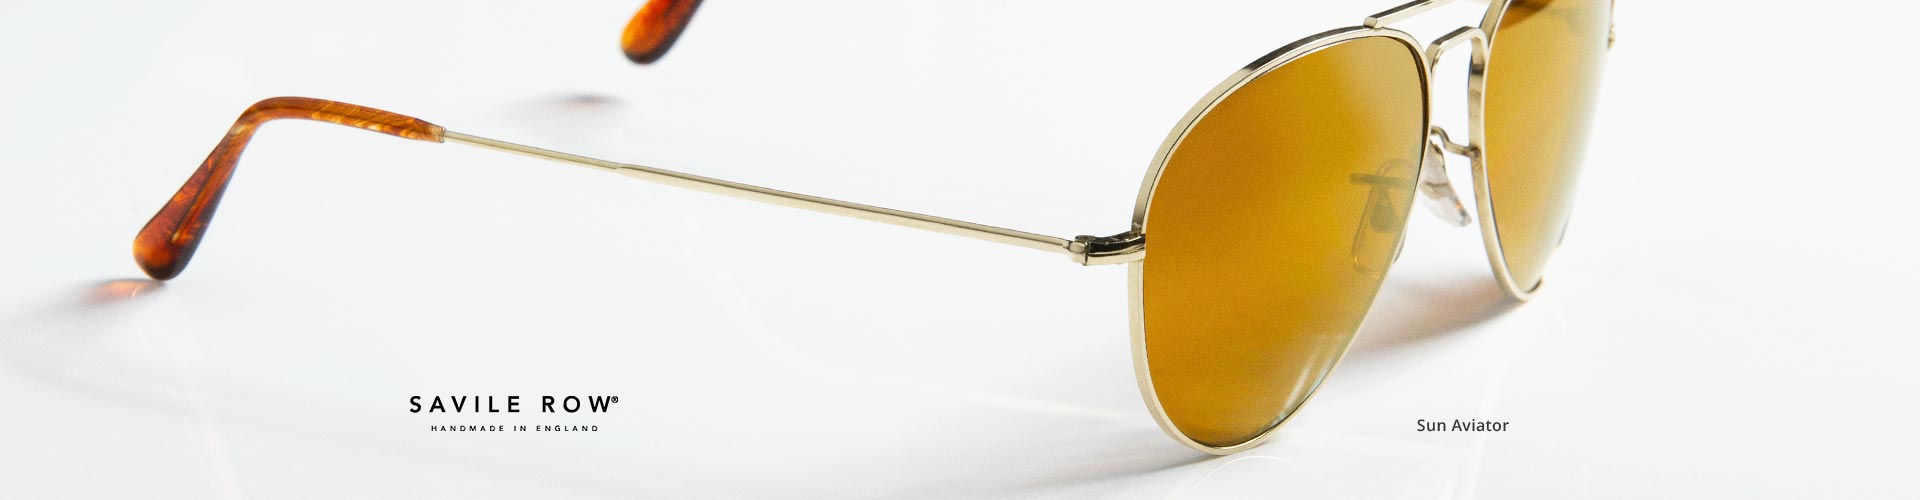 Shop Savile Row Sunglasses - model Sun Aviator featured